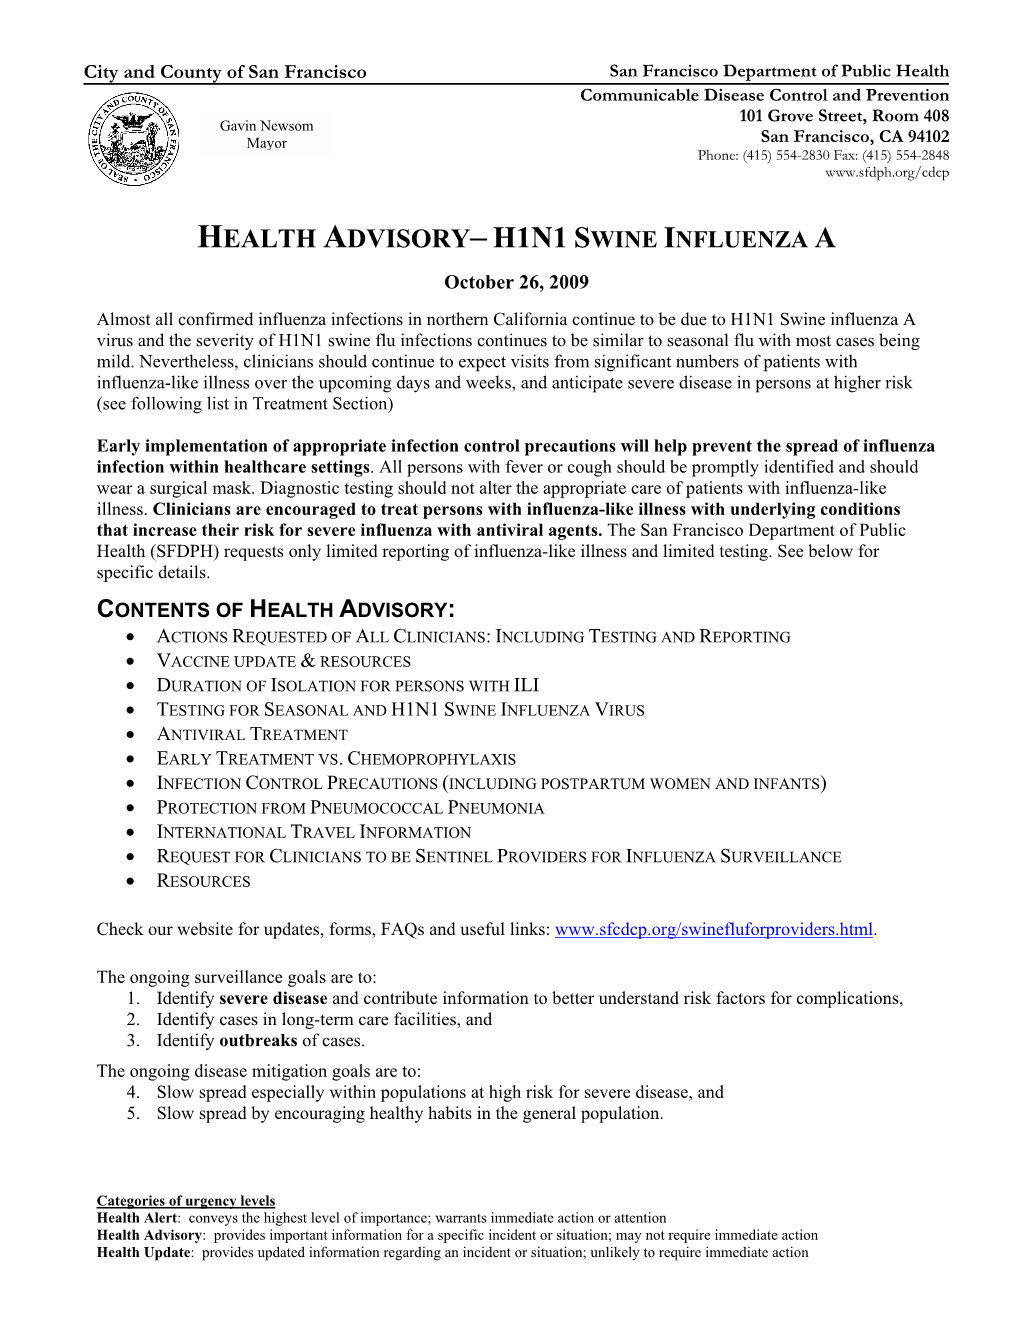 H1N1 Swine Influenza a Health Advisory